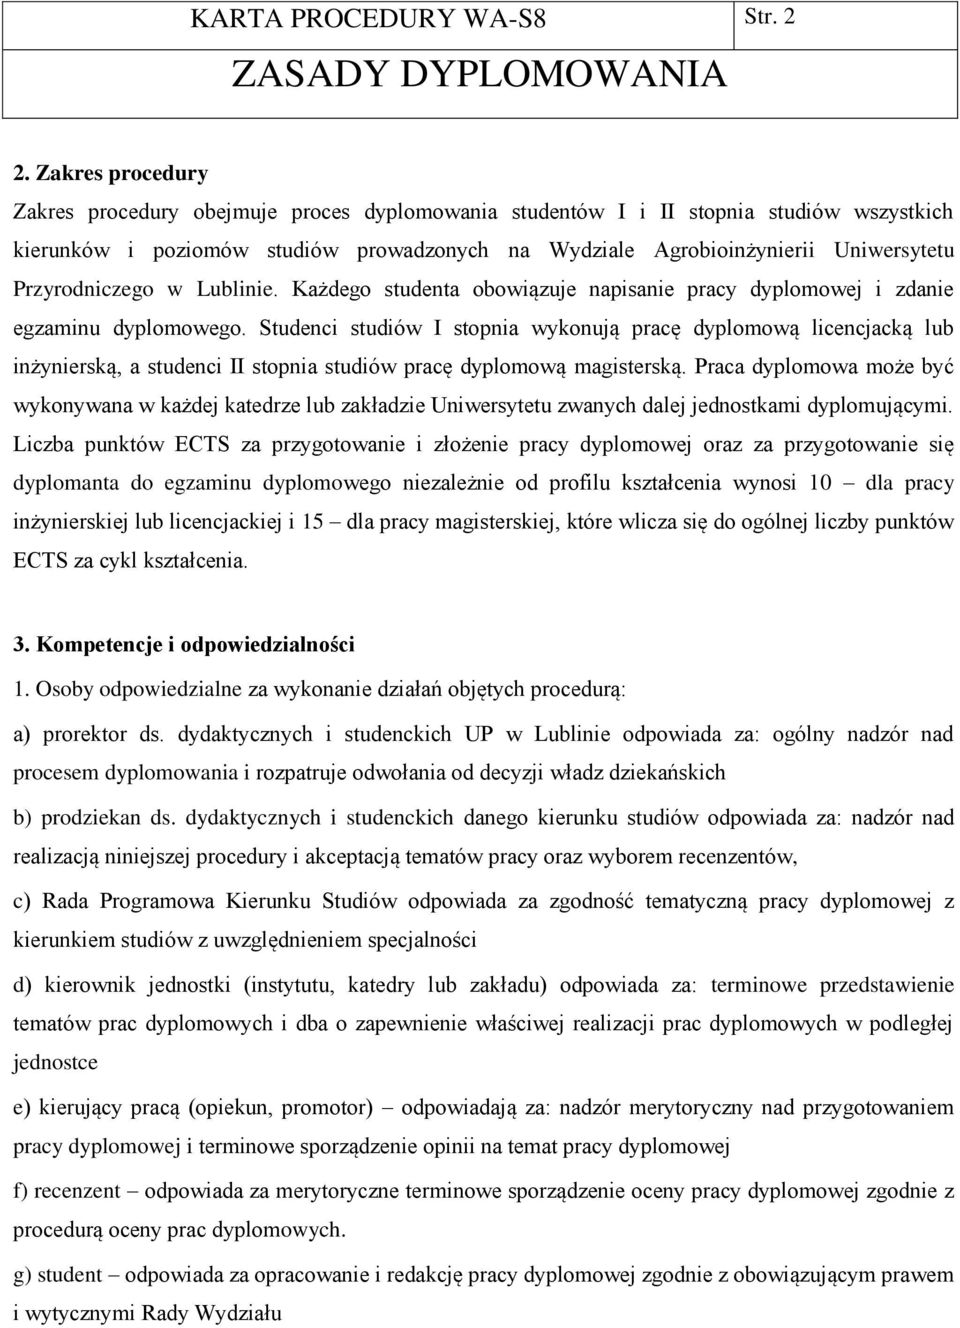 Przyrodniczego w Lublinie. Każdego studenta obowiązuje napisanie pracy dyplomowej i zdanie egzaminu dyplomowego.